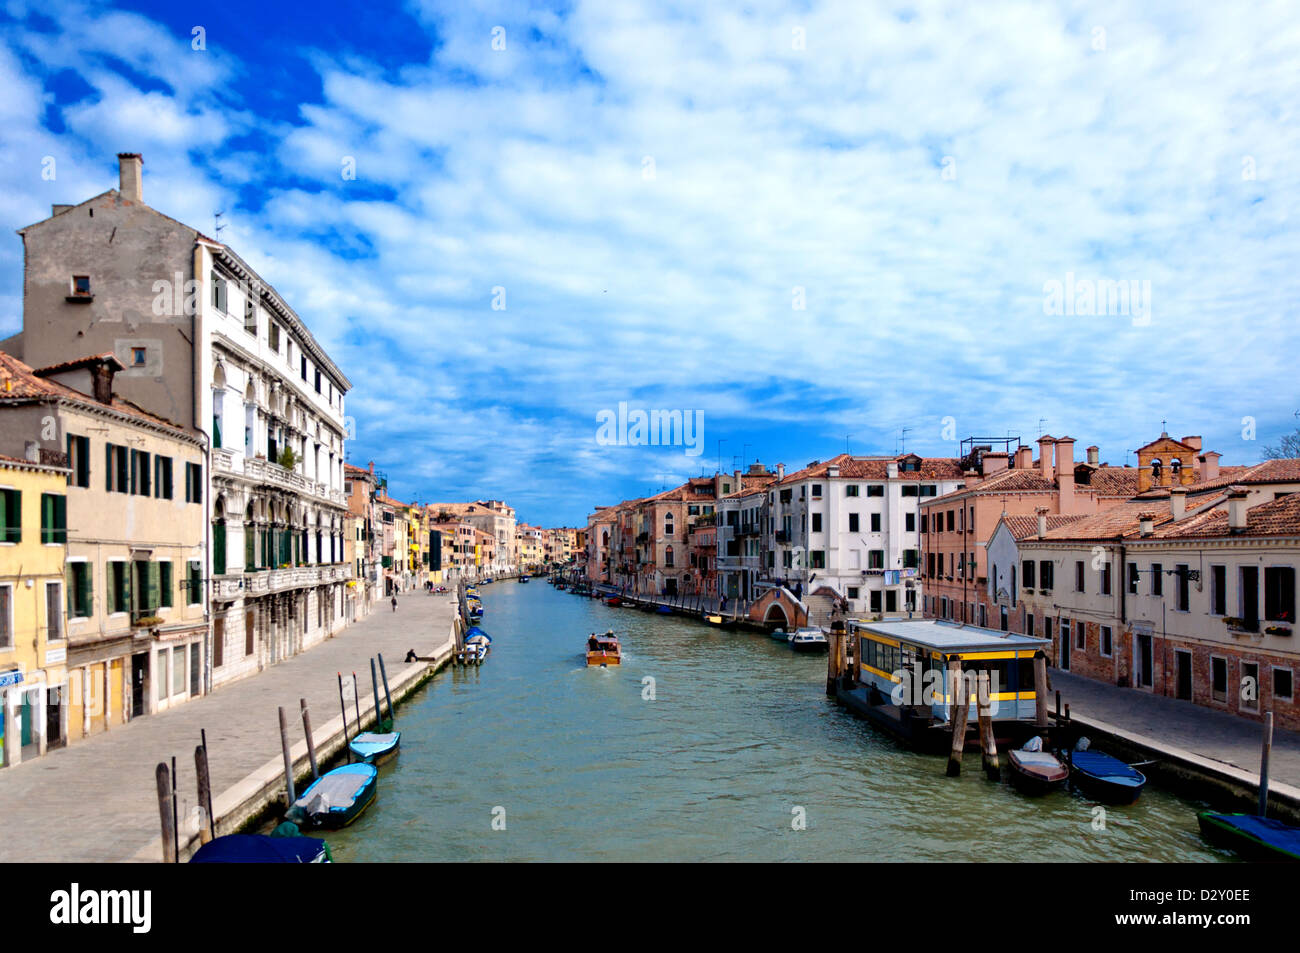 Vue urbaine typique avec canal, bateaux et maisons à Venise - Italie Banque D'Images